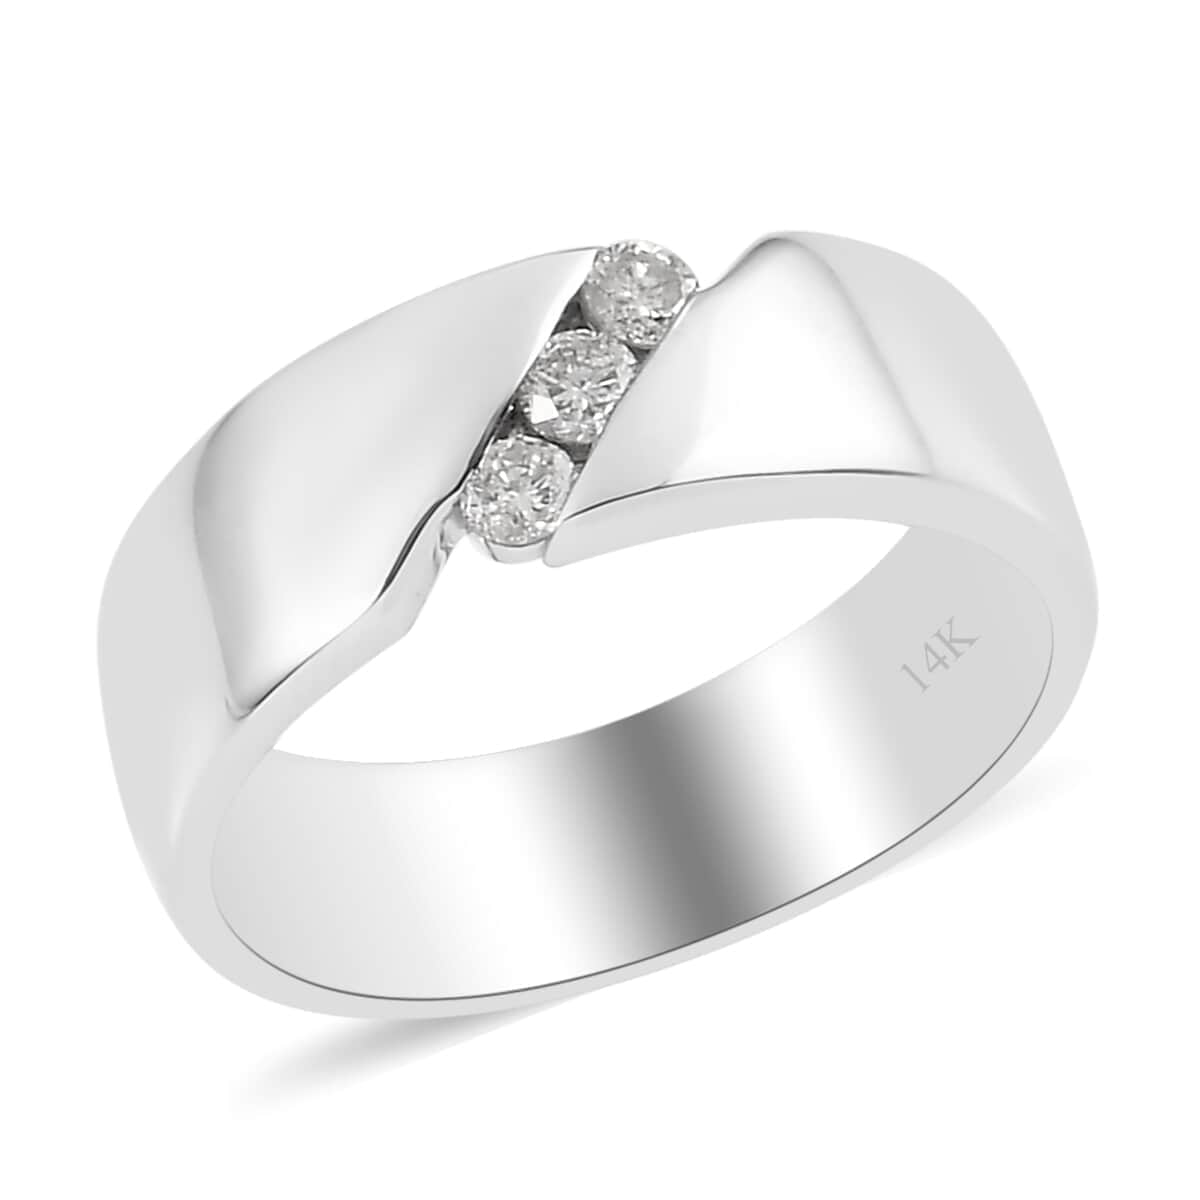 Luxoro 14K White Gold I2 Diamond Band Ring (Size 8.0) 0.15 ctw image number 0